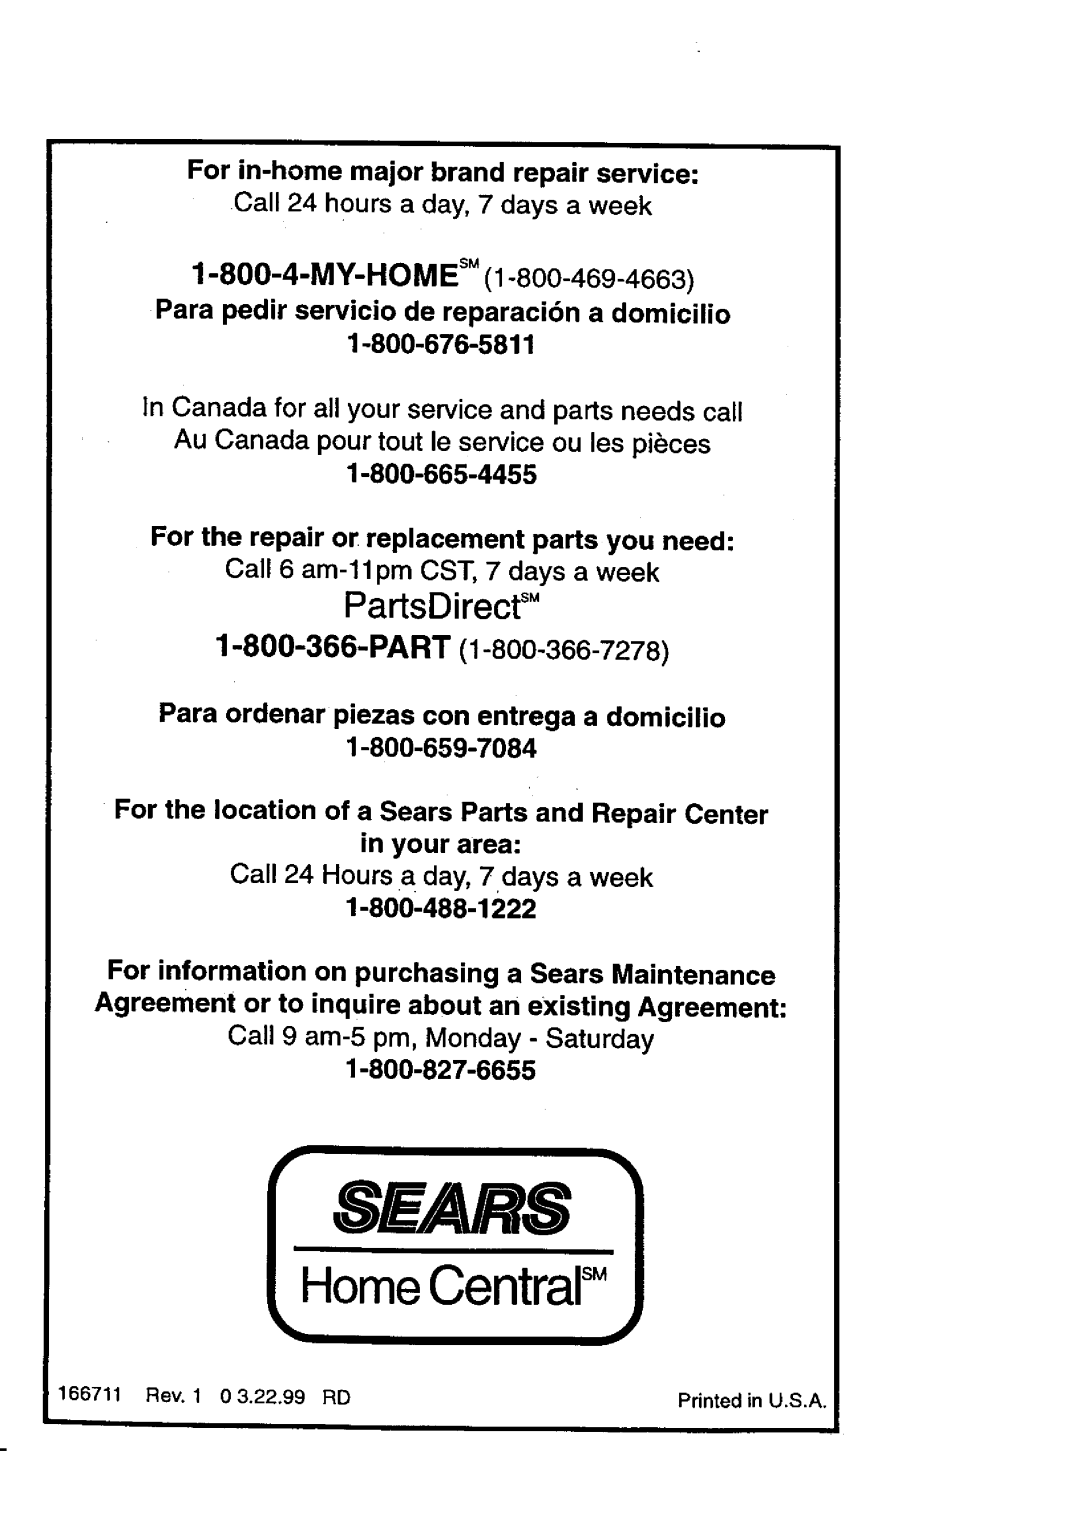 Craftsman 917.27084 manual PartsDirectS, Sears, HomeCentralsM, MY-HOM E s, Para pedir servicio de reparaci6n a domicilio 